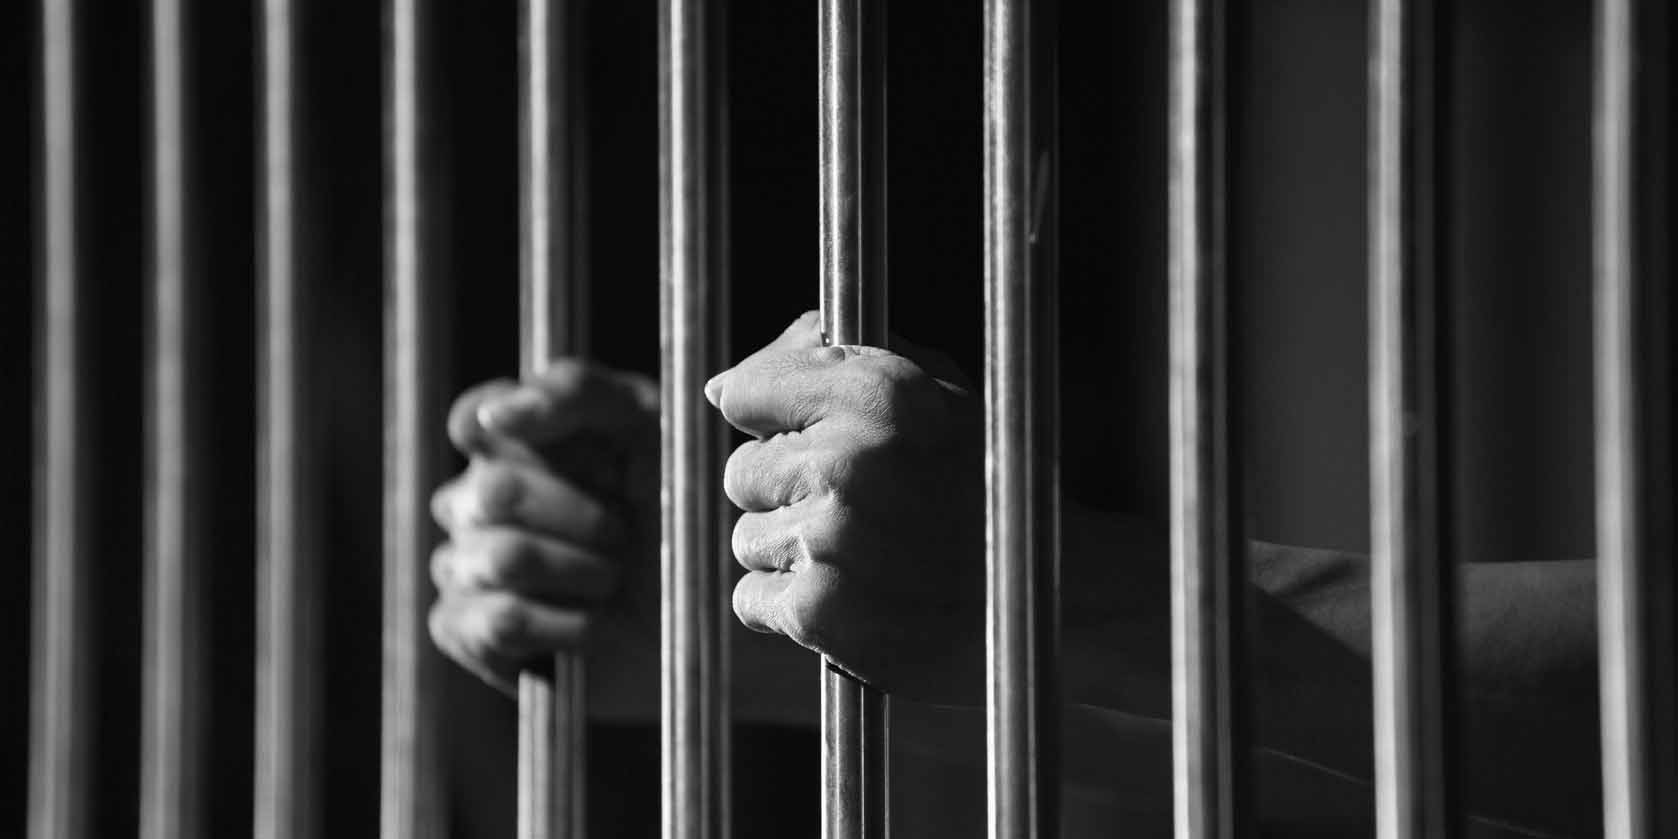 Πολίτης κατέληξε στη φυλακή γιατί δεν πλήρωνε το ΦΠΑ - «Φέρτε χειροπέδες και πάρτε μας όλους να τελειώνουμε»